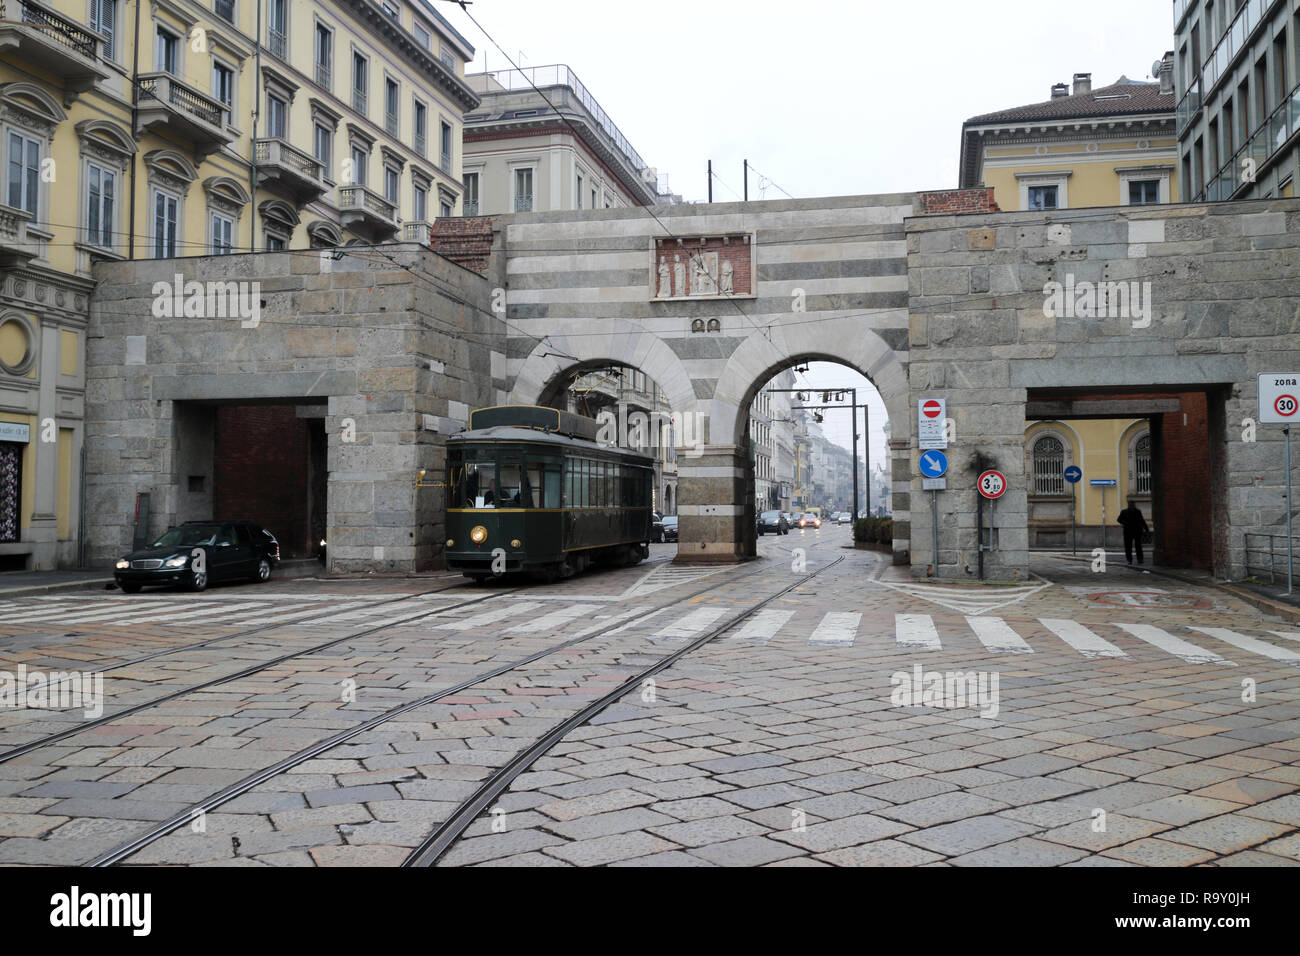 Viste le strade nella città italiana di Milano Foto Stock